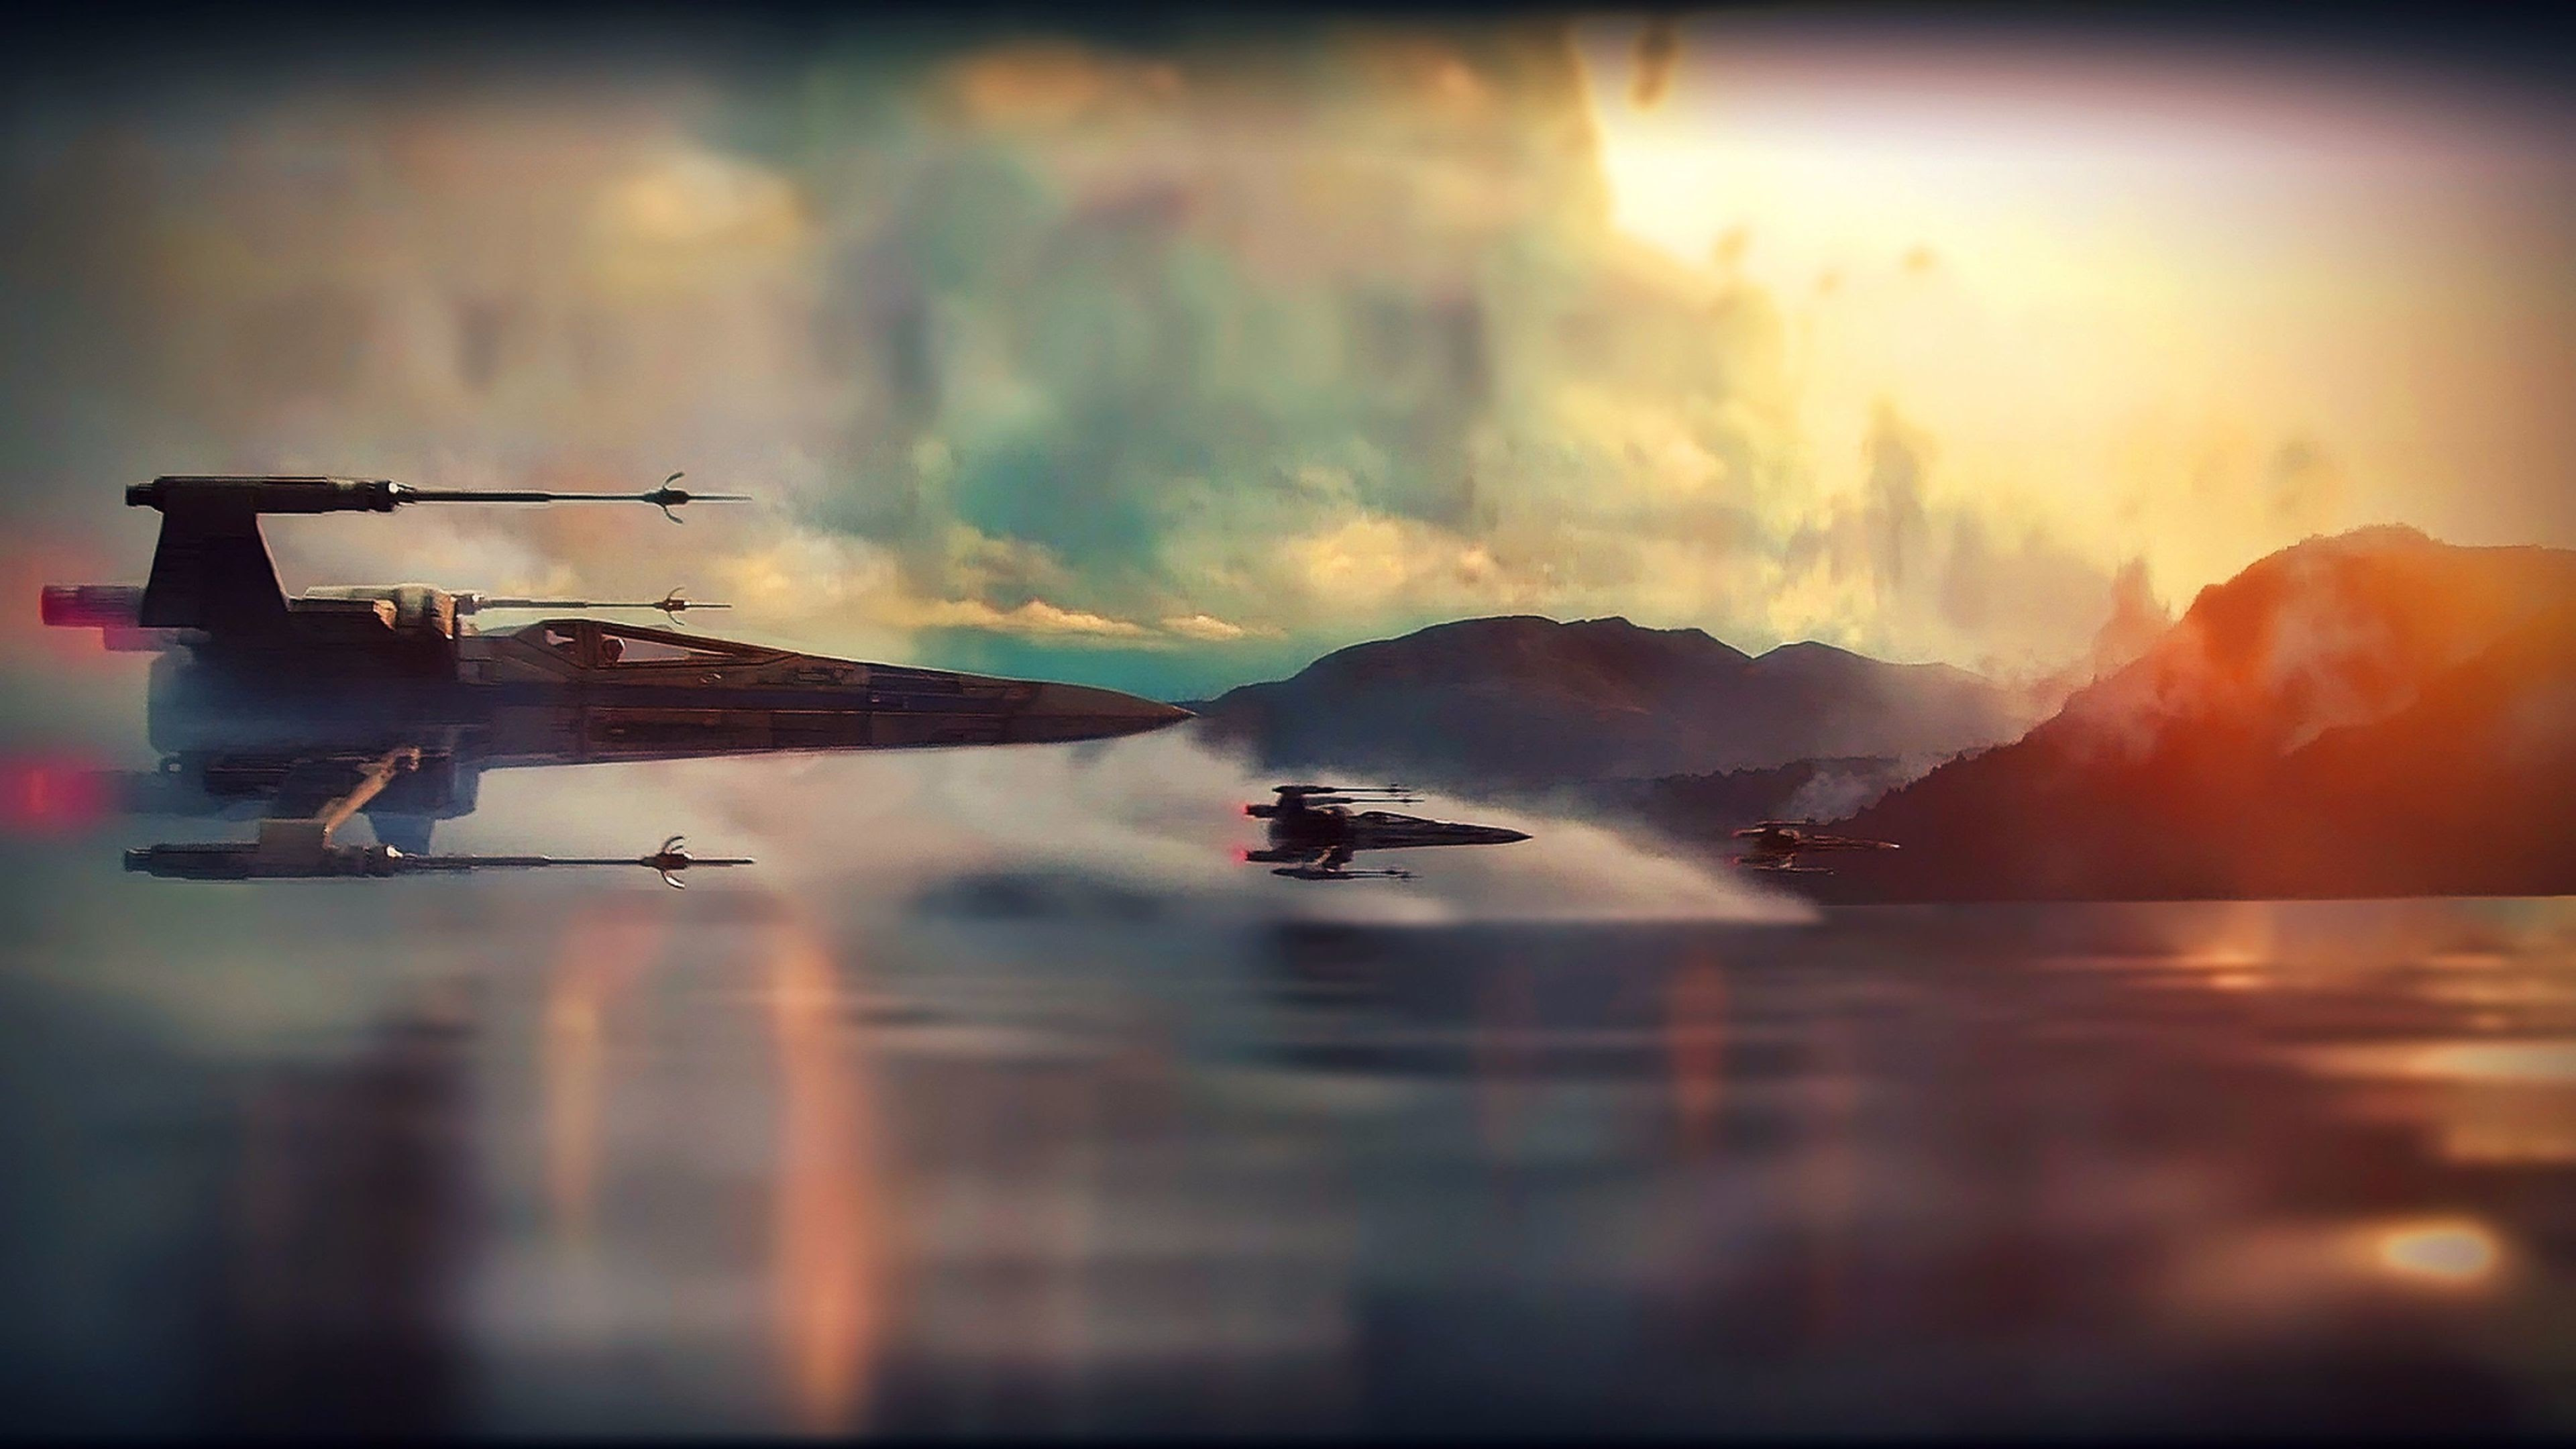 1080p Images 4k Wallpaper Star Wars Desktop Background 4k